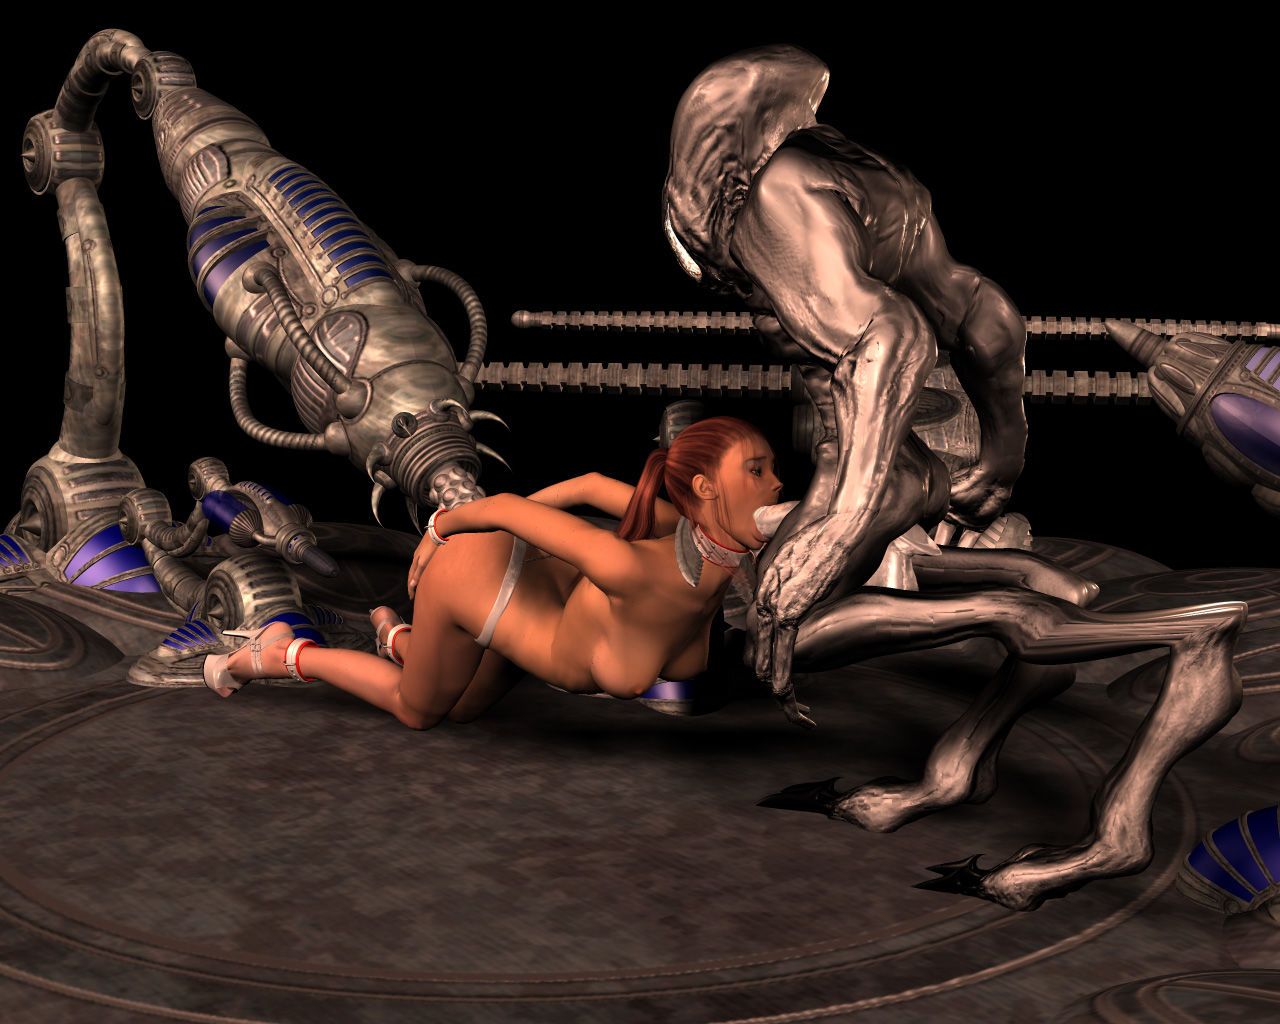 Alien Abduction Shorts - part 2